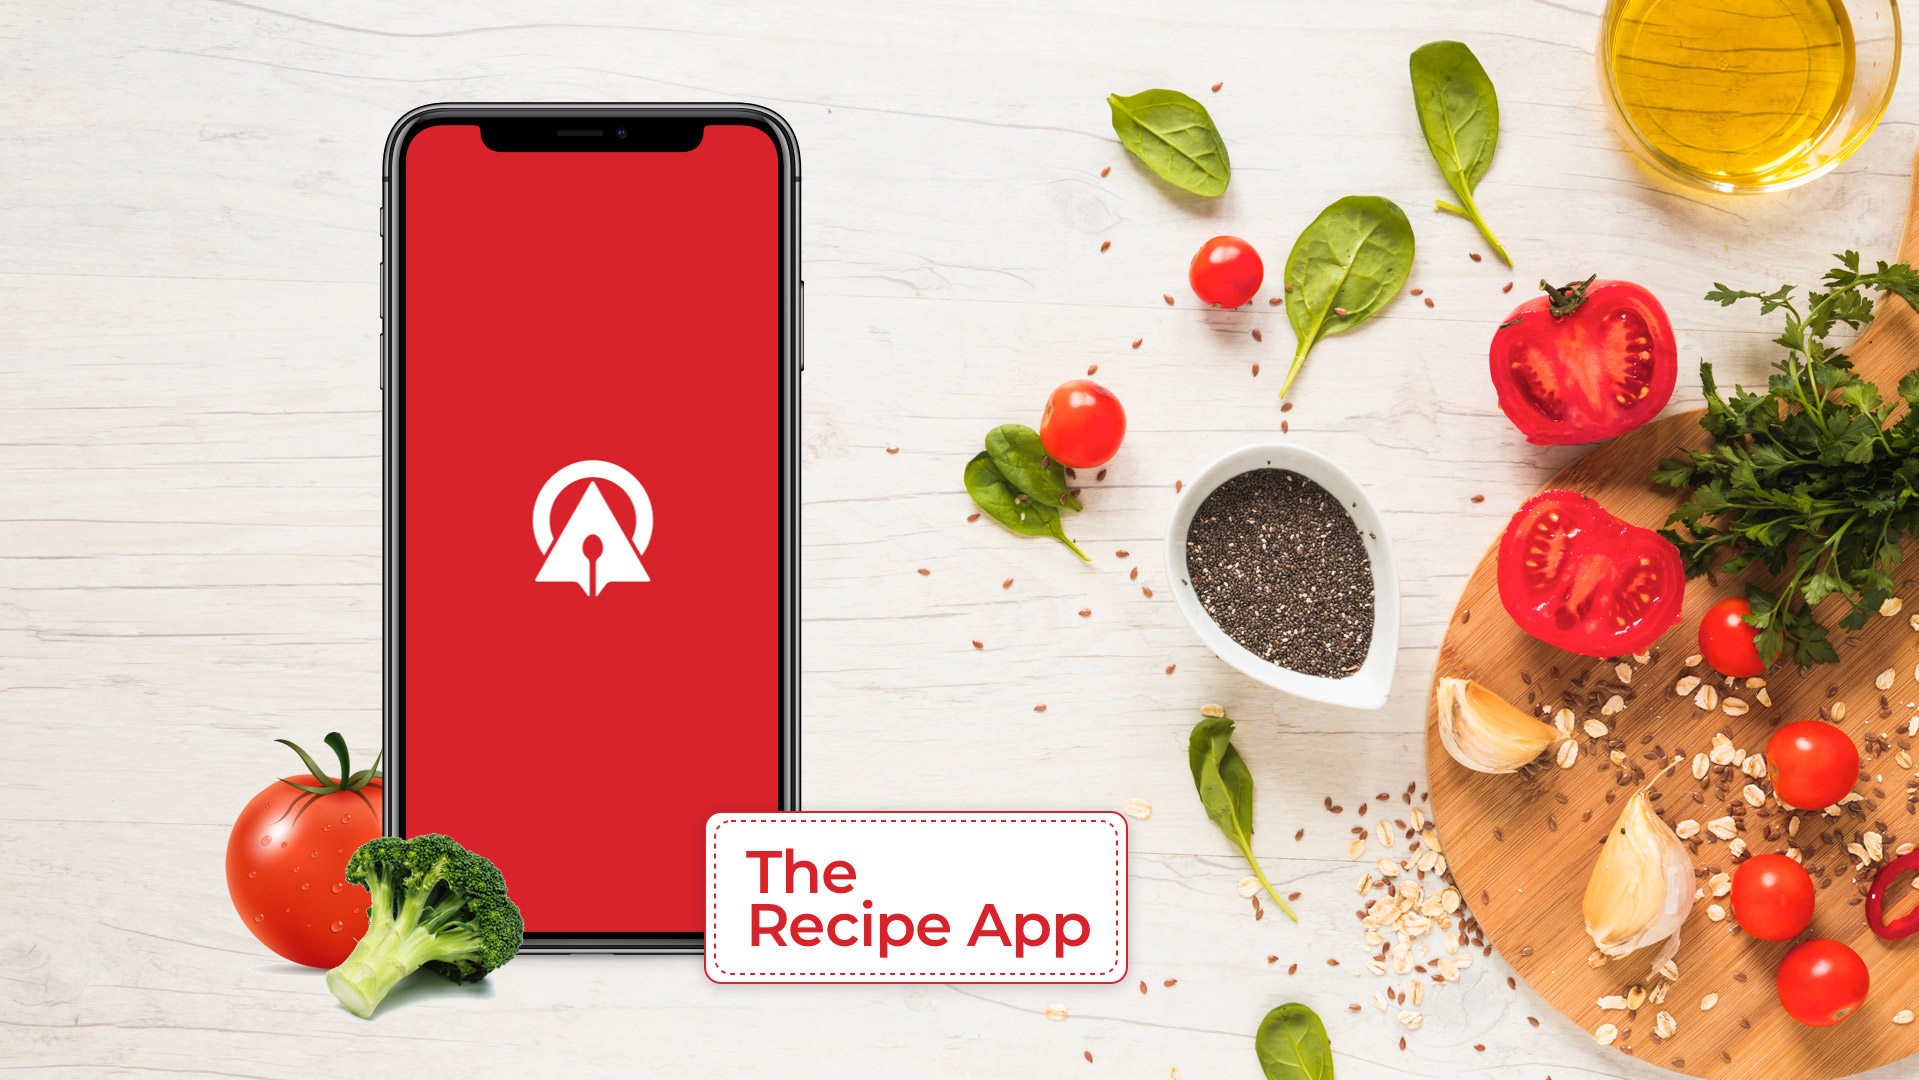 The Recipe App